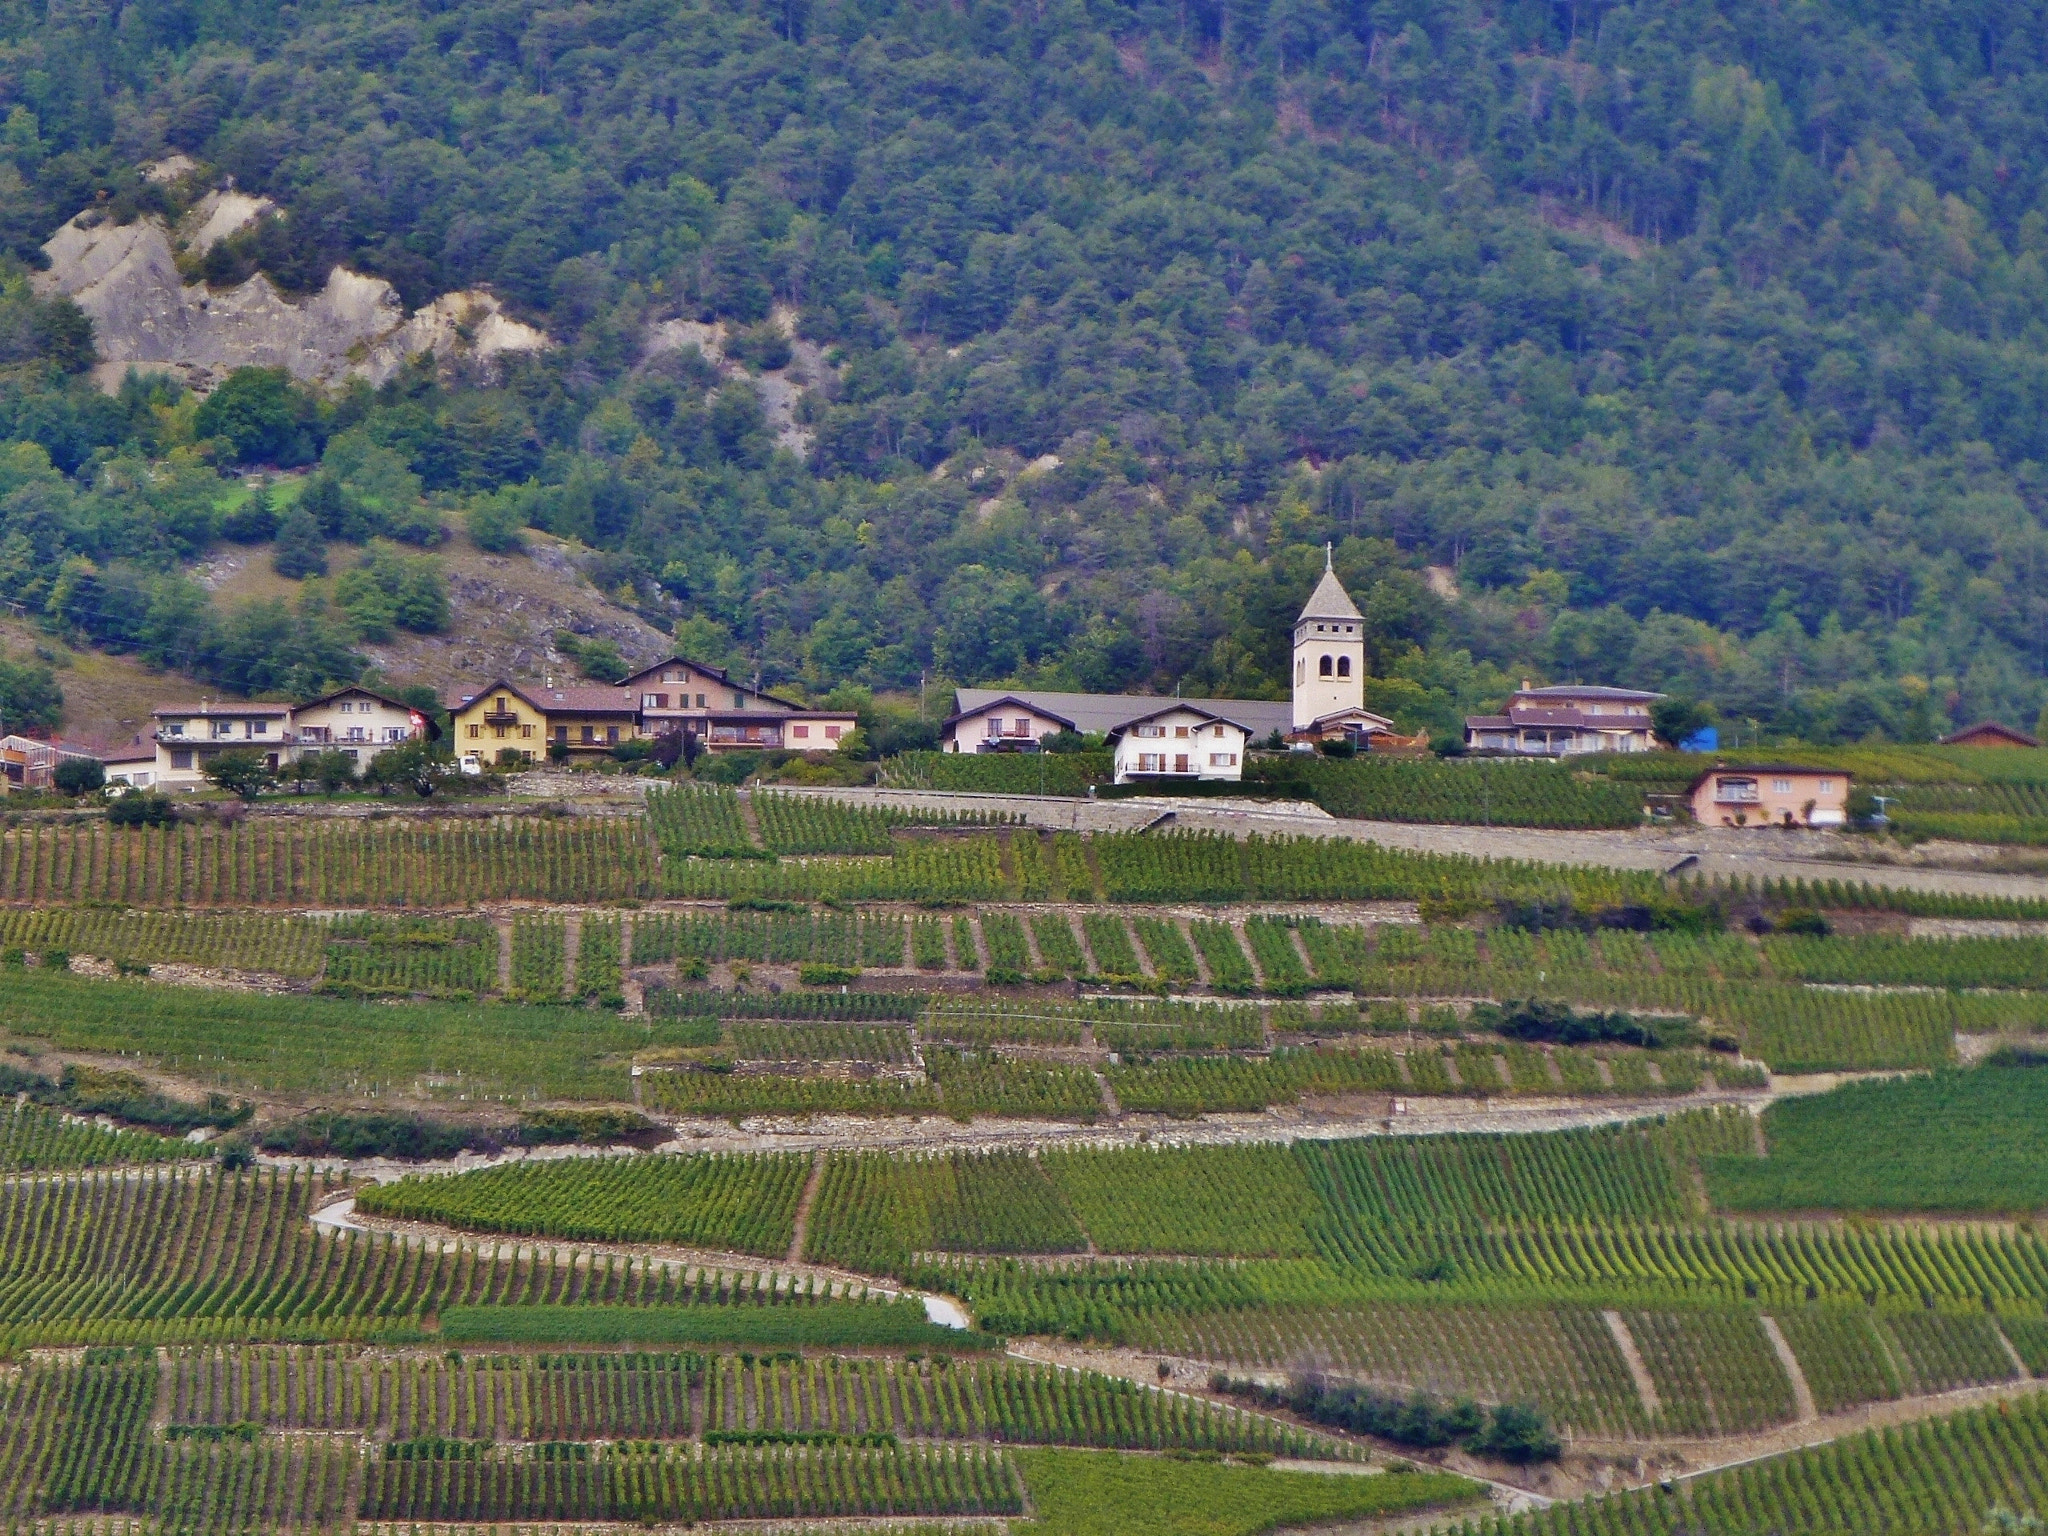 Panasonic DMC-ZS10 sample photo. Switzerland's vineyards photography